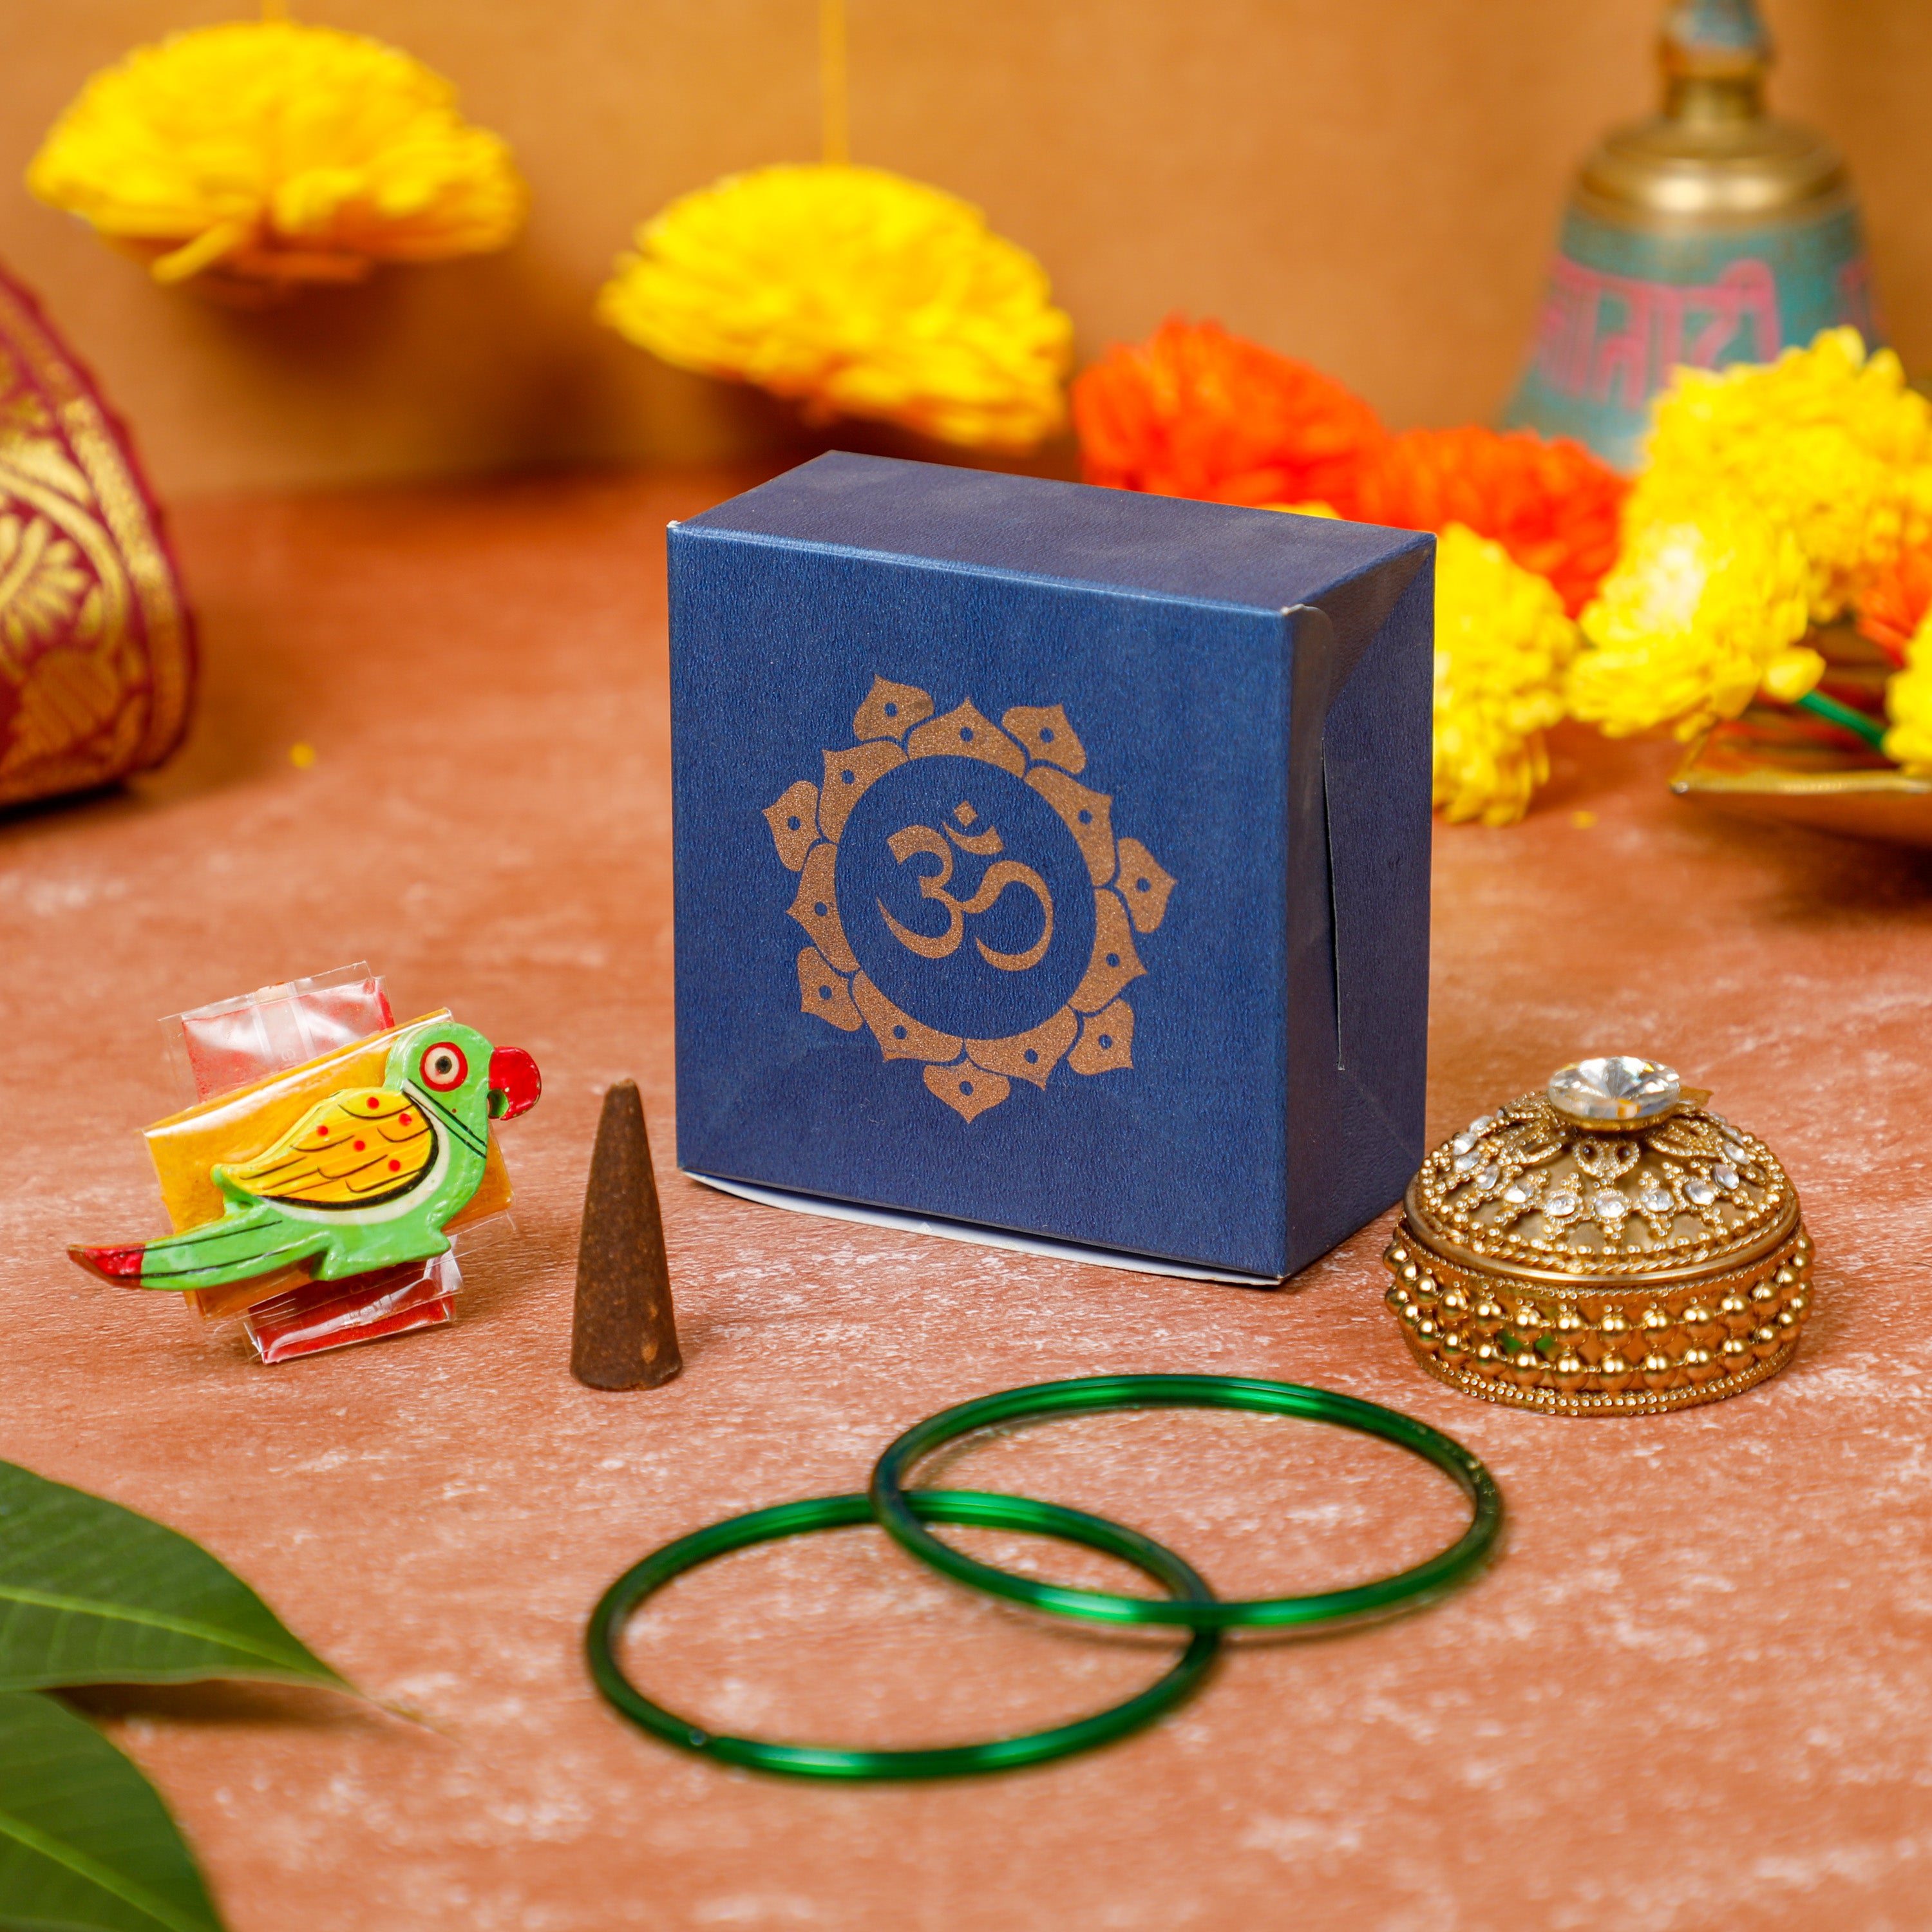 தாம்பூலத் தட்டில் என்ன பொருட்கள் வைக்க வேண்டும் ||Varalakshmi pooja return gift  ideas - YouTube